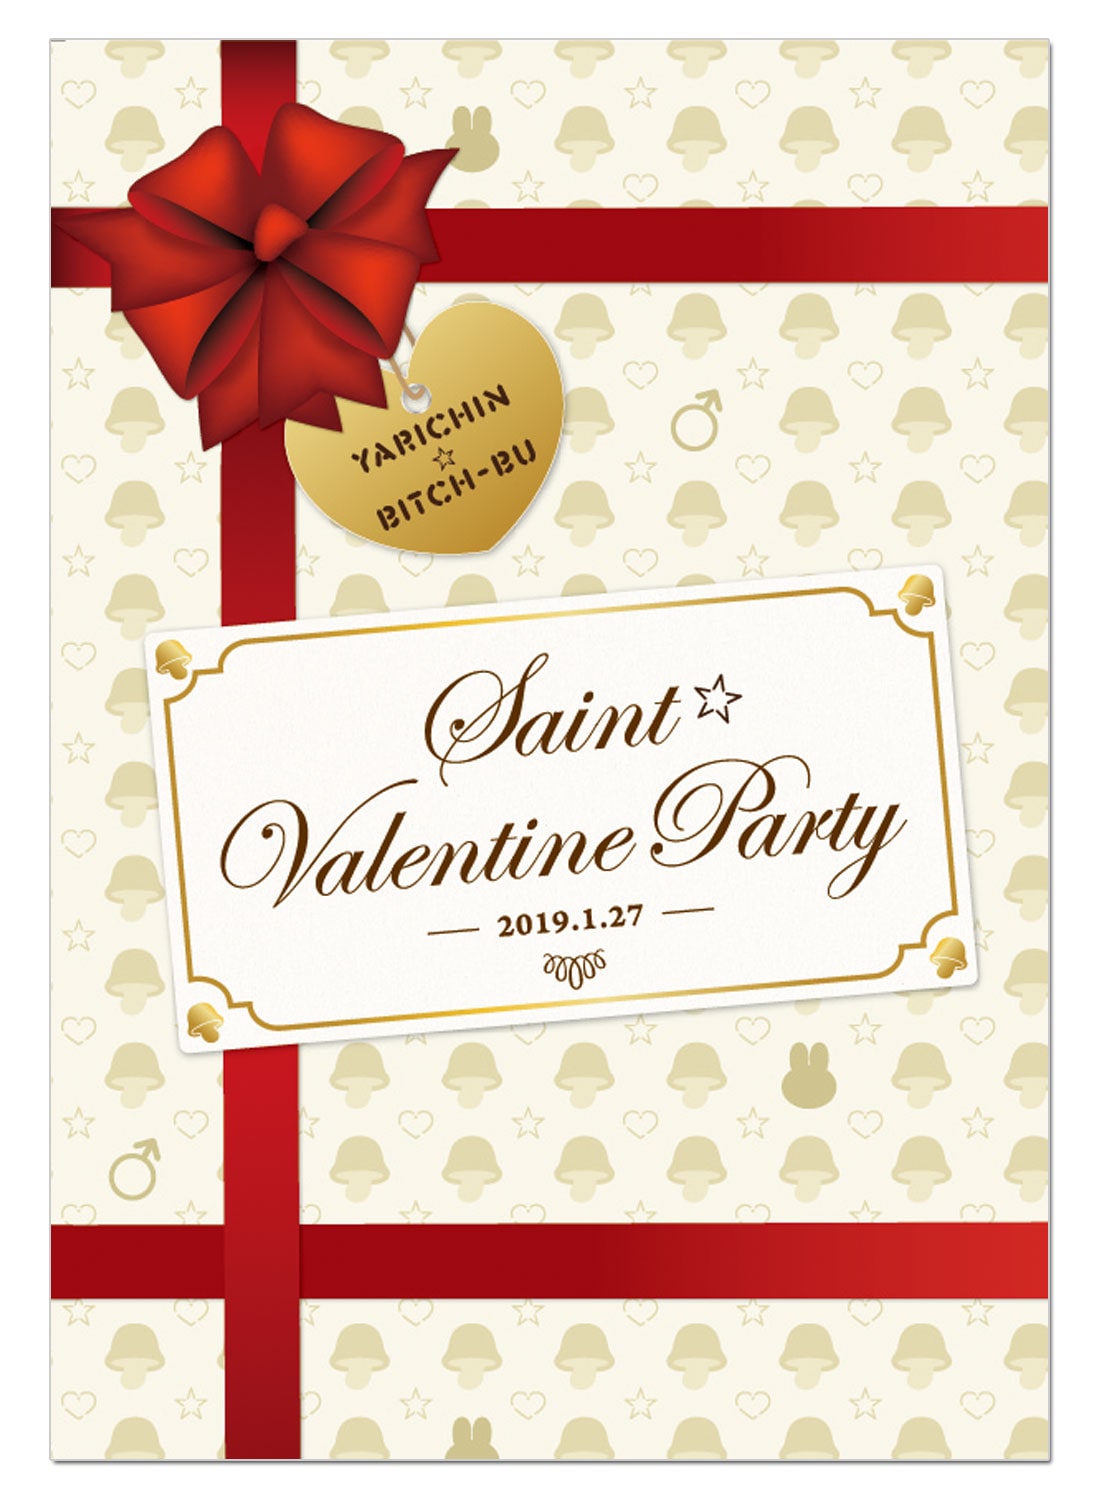 ヤリチン☆ビッチ部 「ちょっと早めの…聖★バレンタインパーティー」 イベントパンフレット